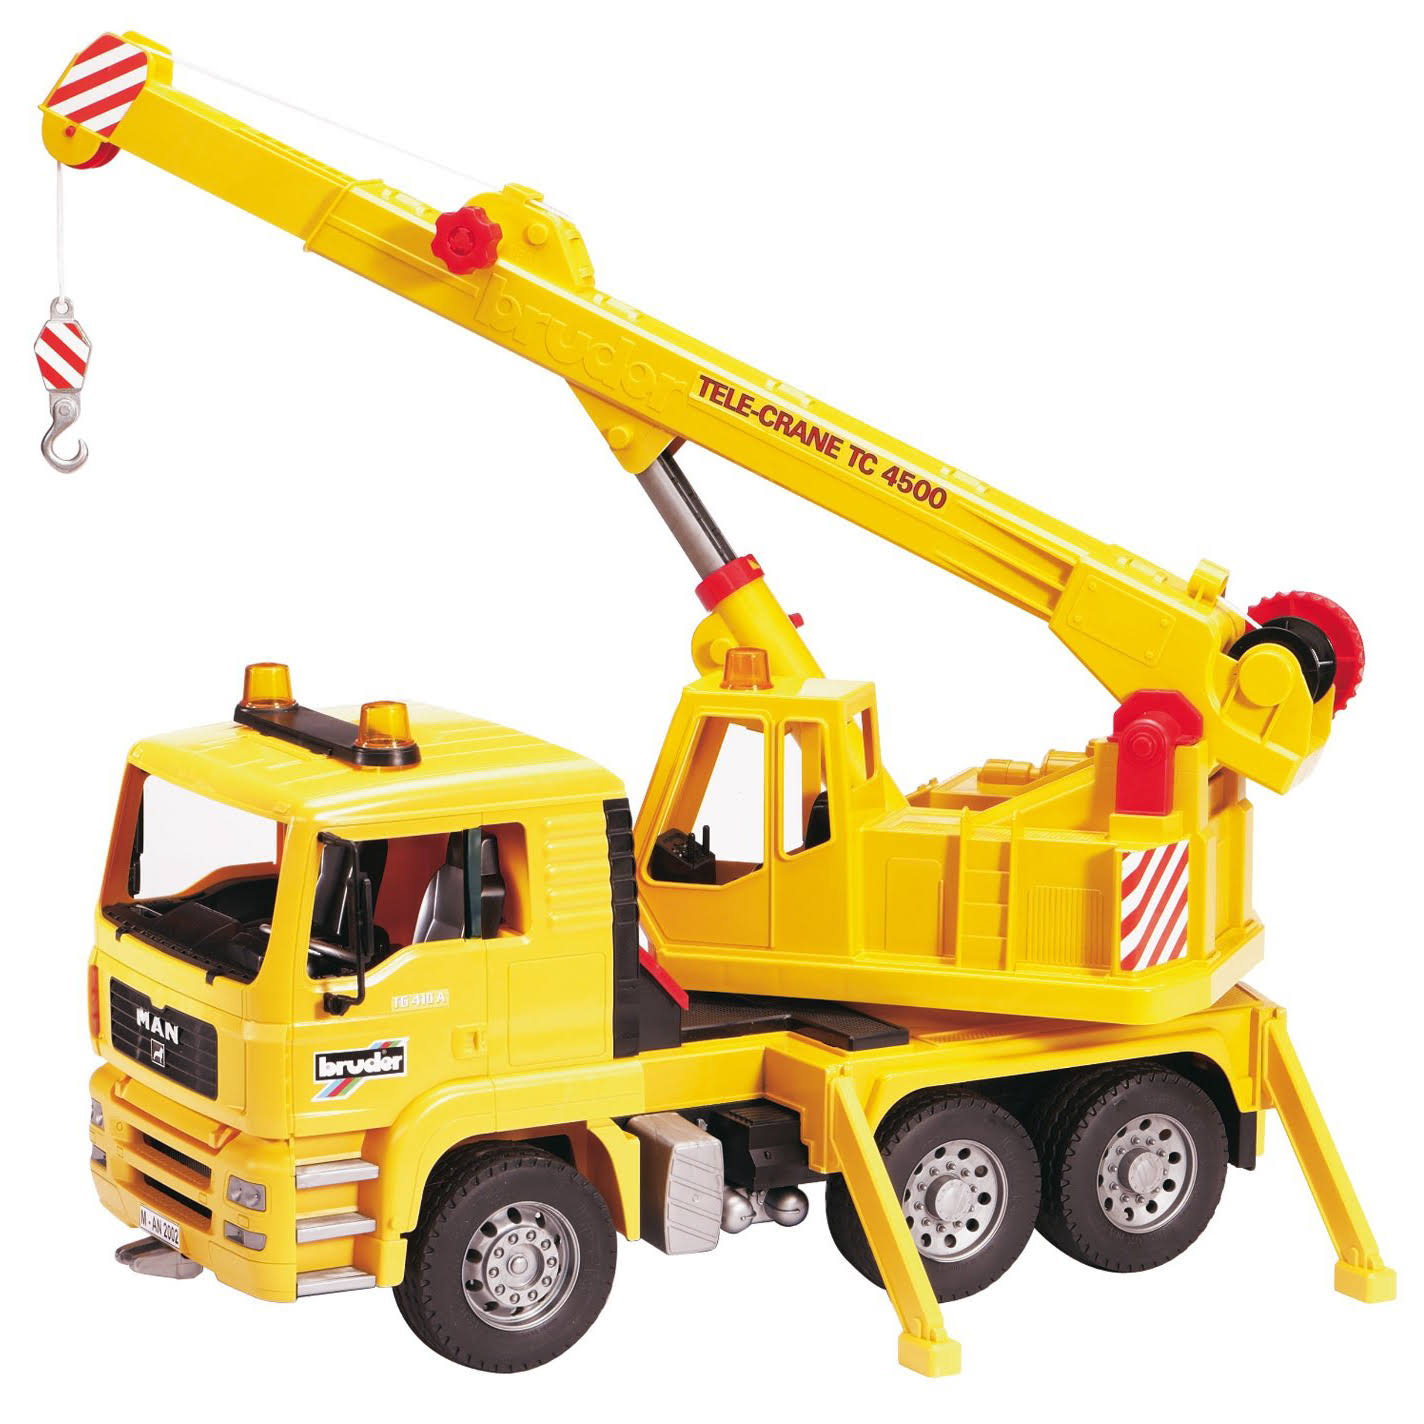 Bruder Mobile Crane Truck Toy